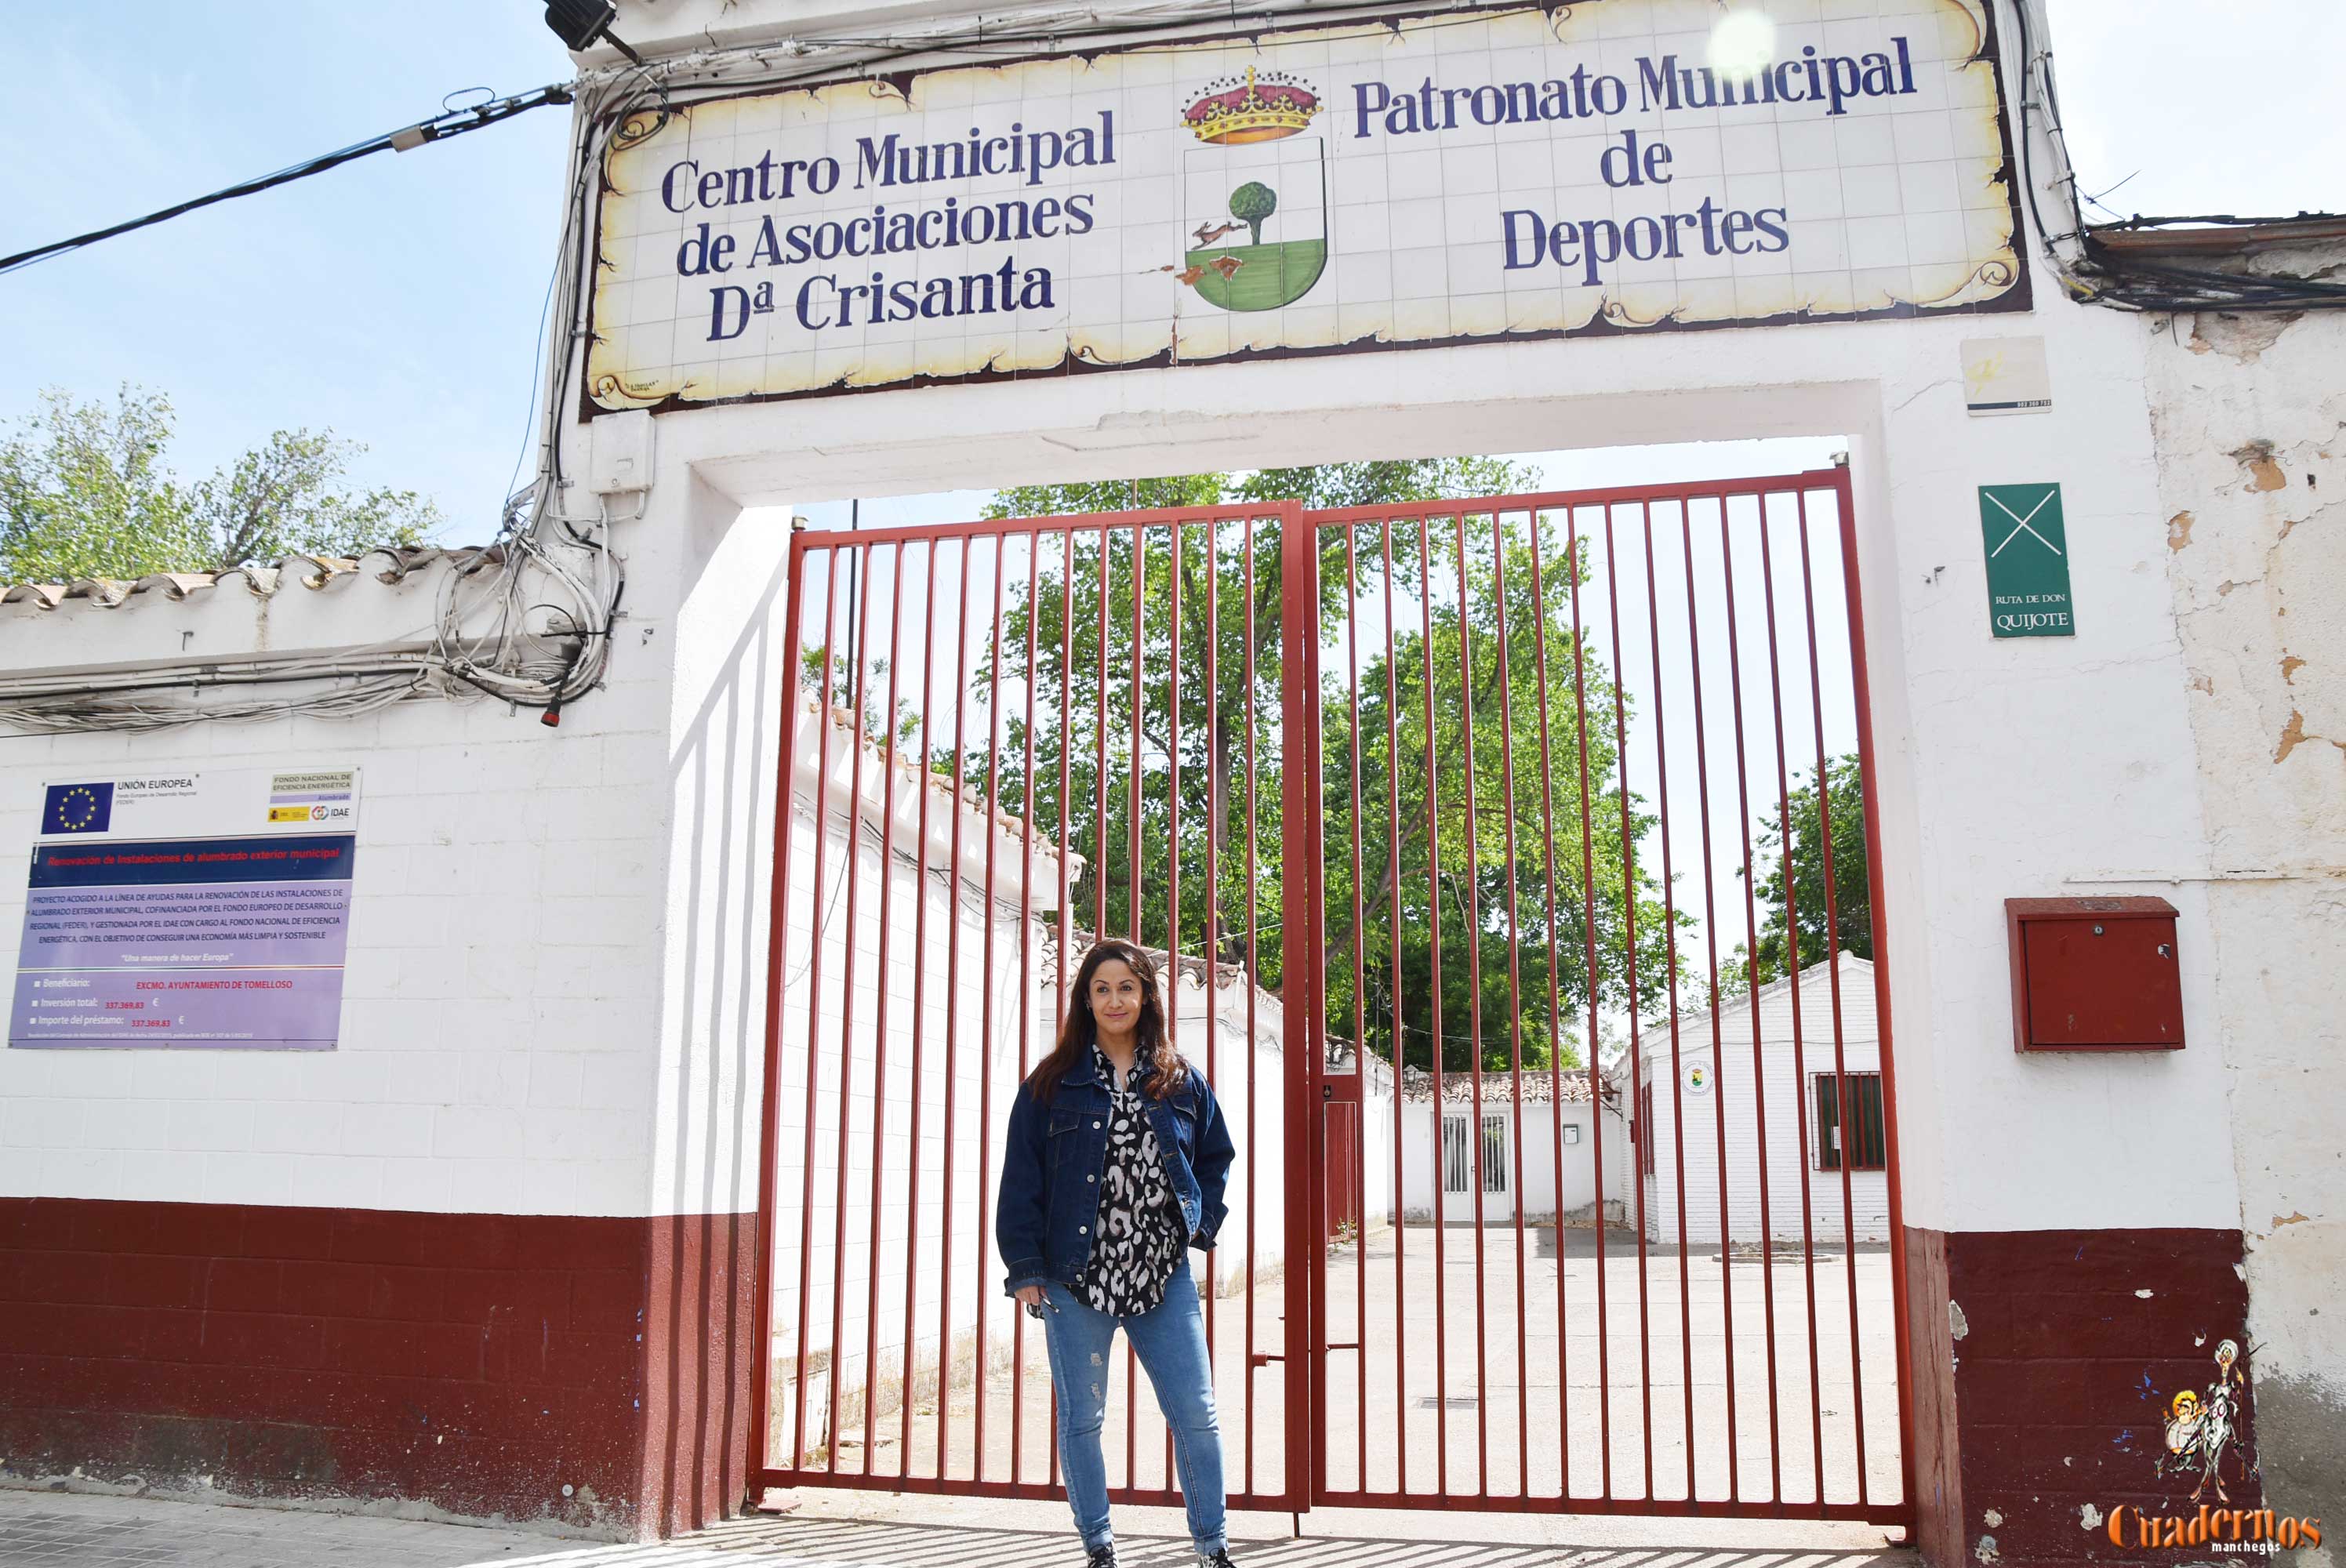 Carmen López: El antiguo colegio Doña Crisanta será el futuro Centro de Asociaciones locales y regionales si ganamos las elecciones”